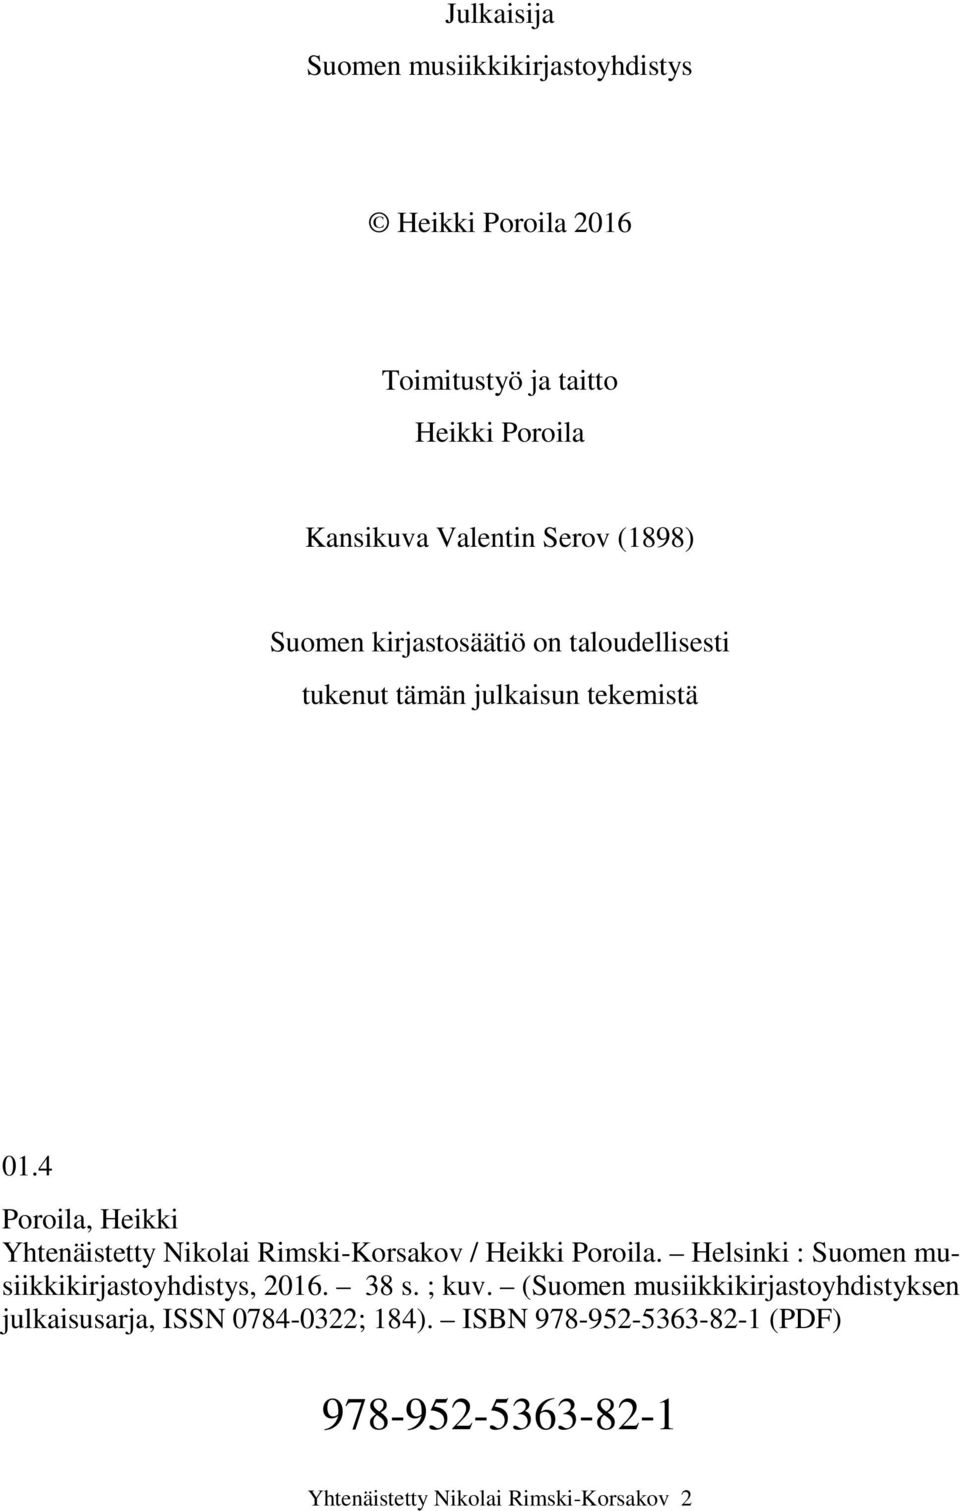 4 Poroila, Heikki Yhtenäistetty Nikolai Rimski-Korsakov / Heikki Poroila. Helsinki : Suomen musiikkikirjastoyhdistys, 2016.